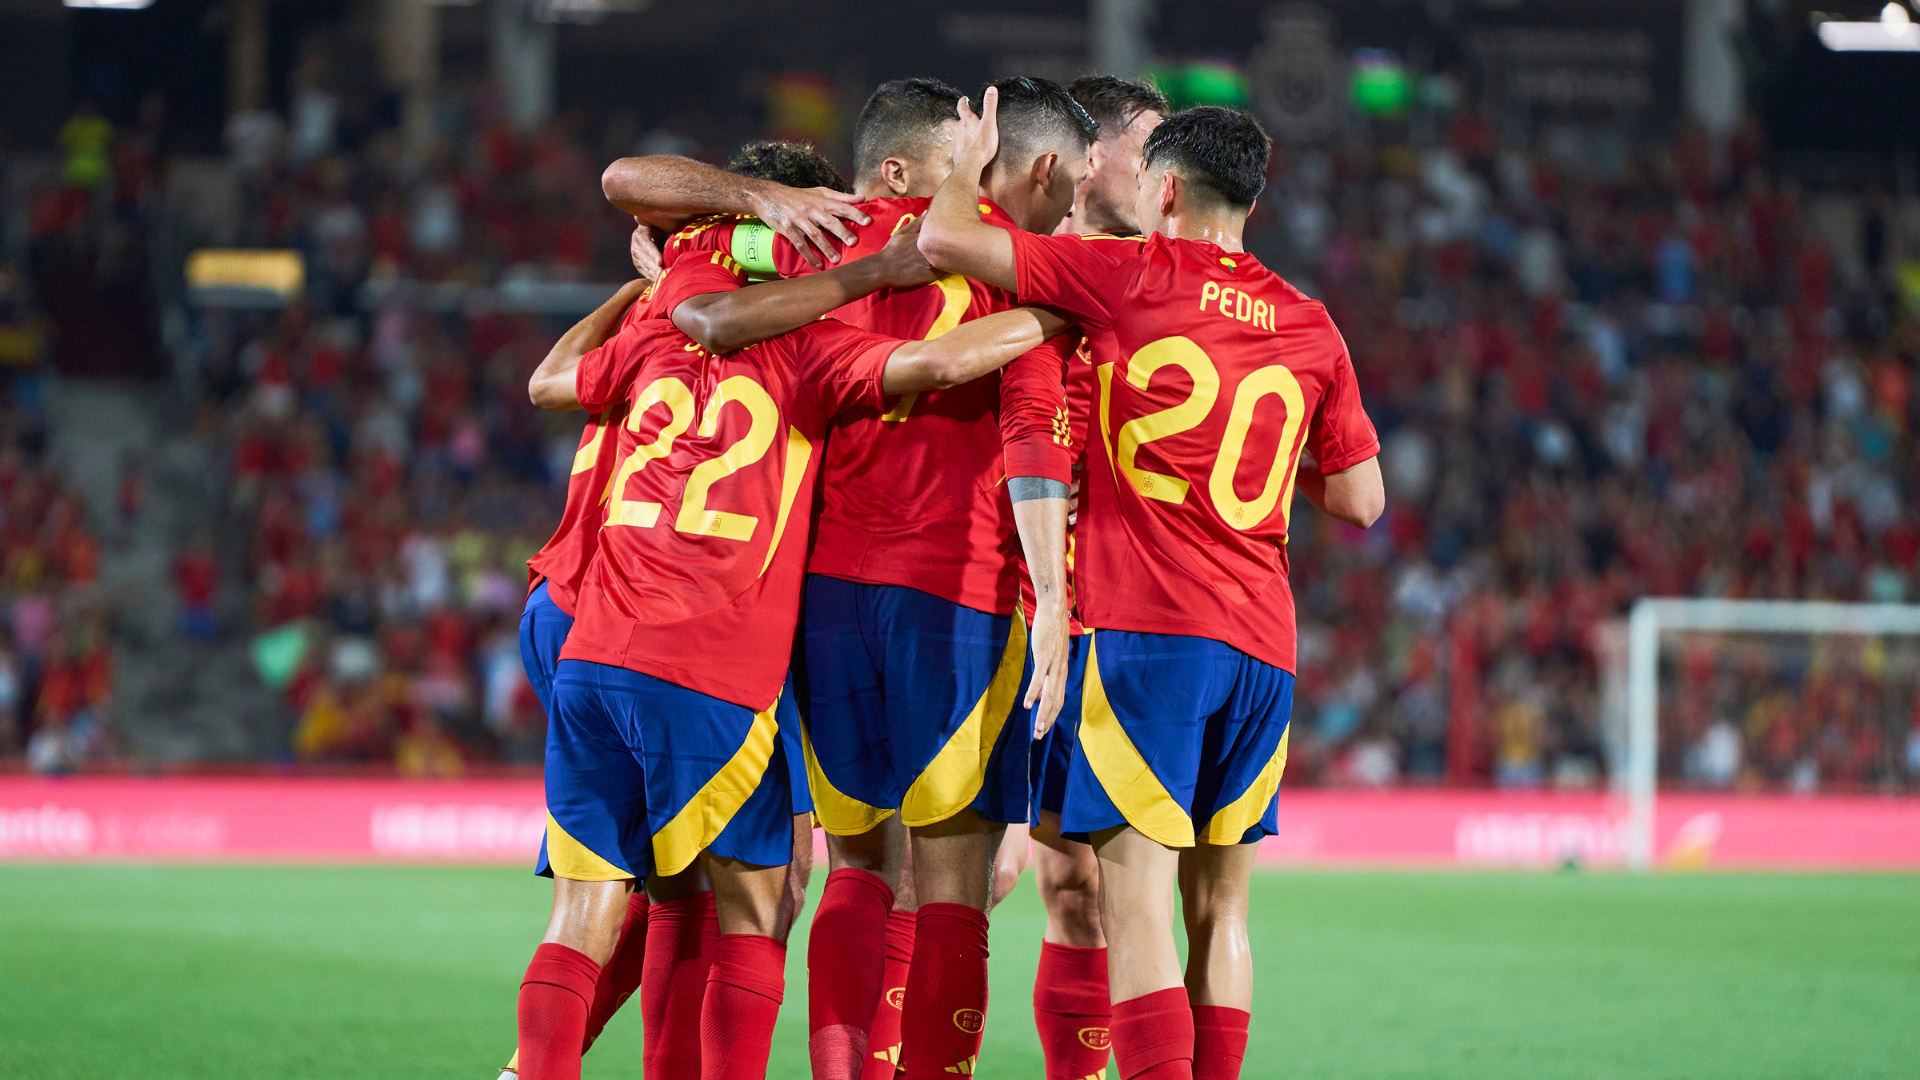 Report: Spain 5-1 Northern Ireland